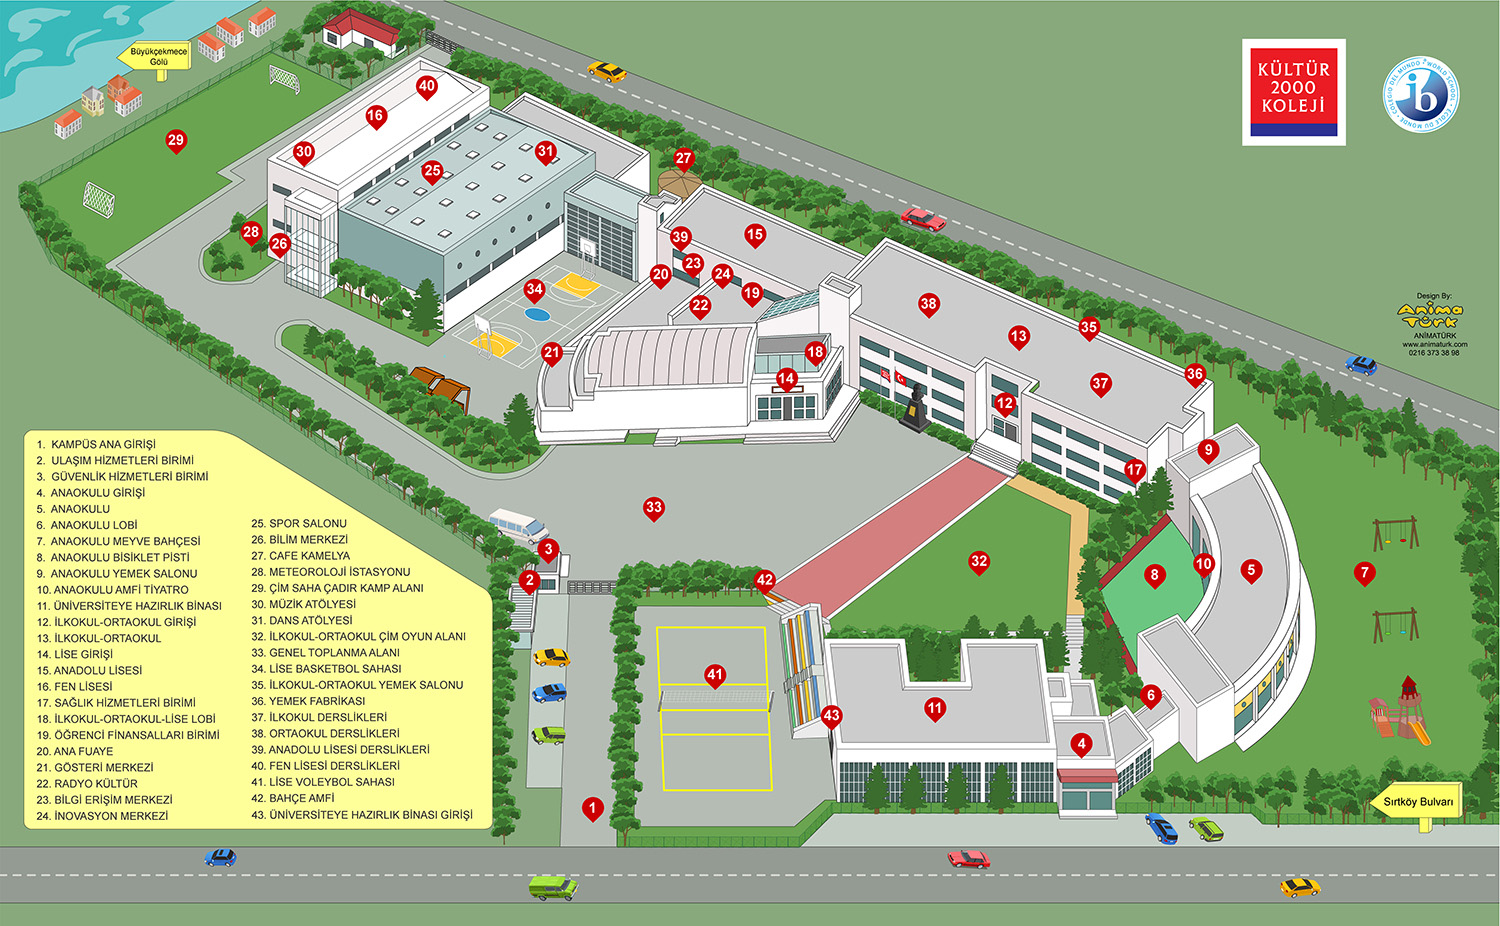 Kültür2000 Koleji Kampüs Haritası